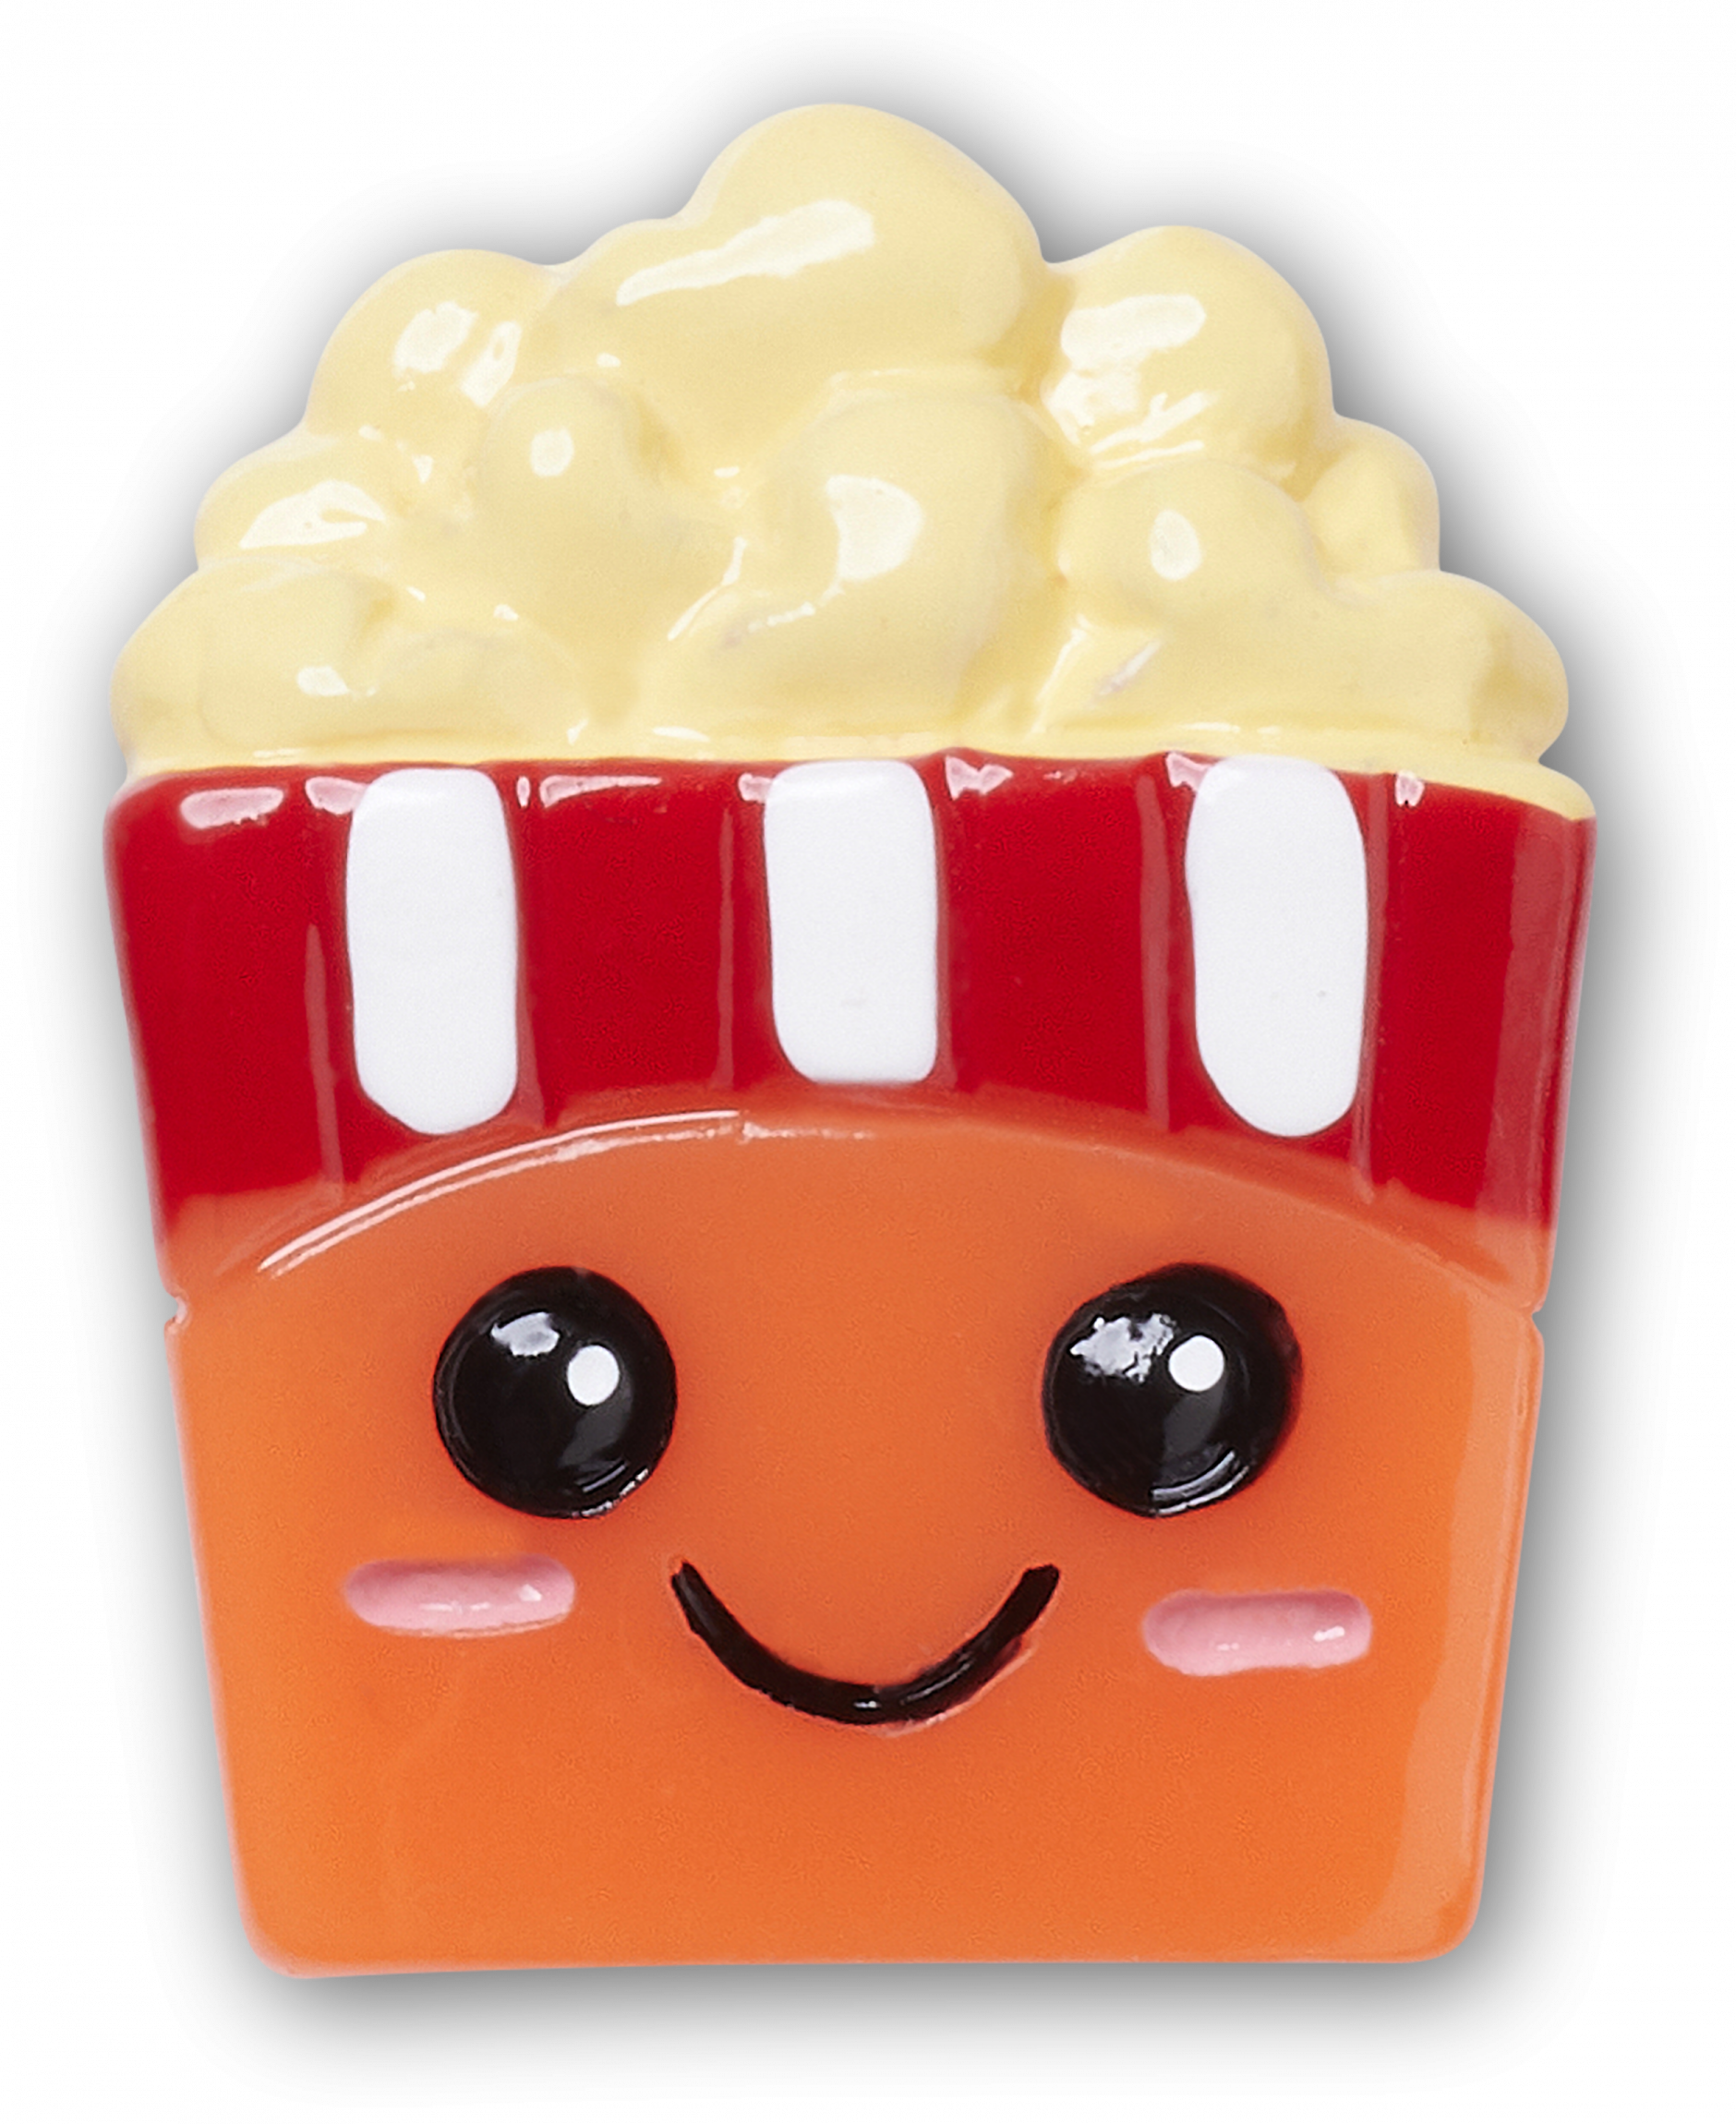 Odznáček Jibbitz - Cutesy Popcorn Bucket